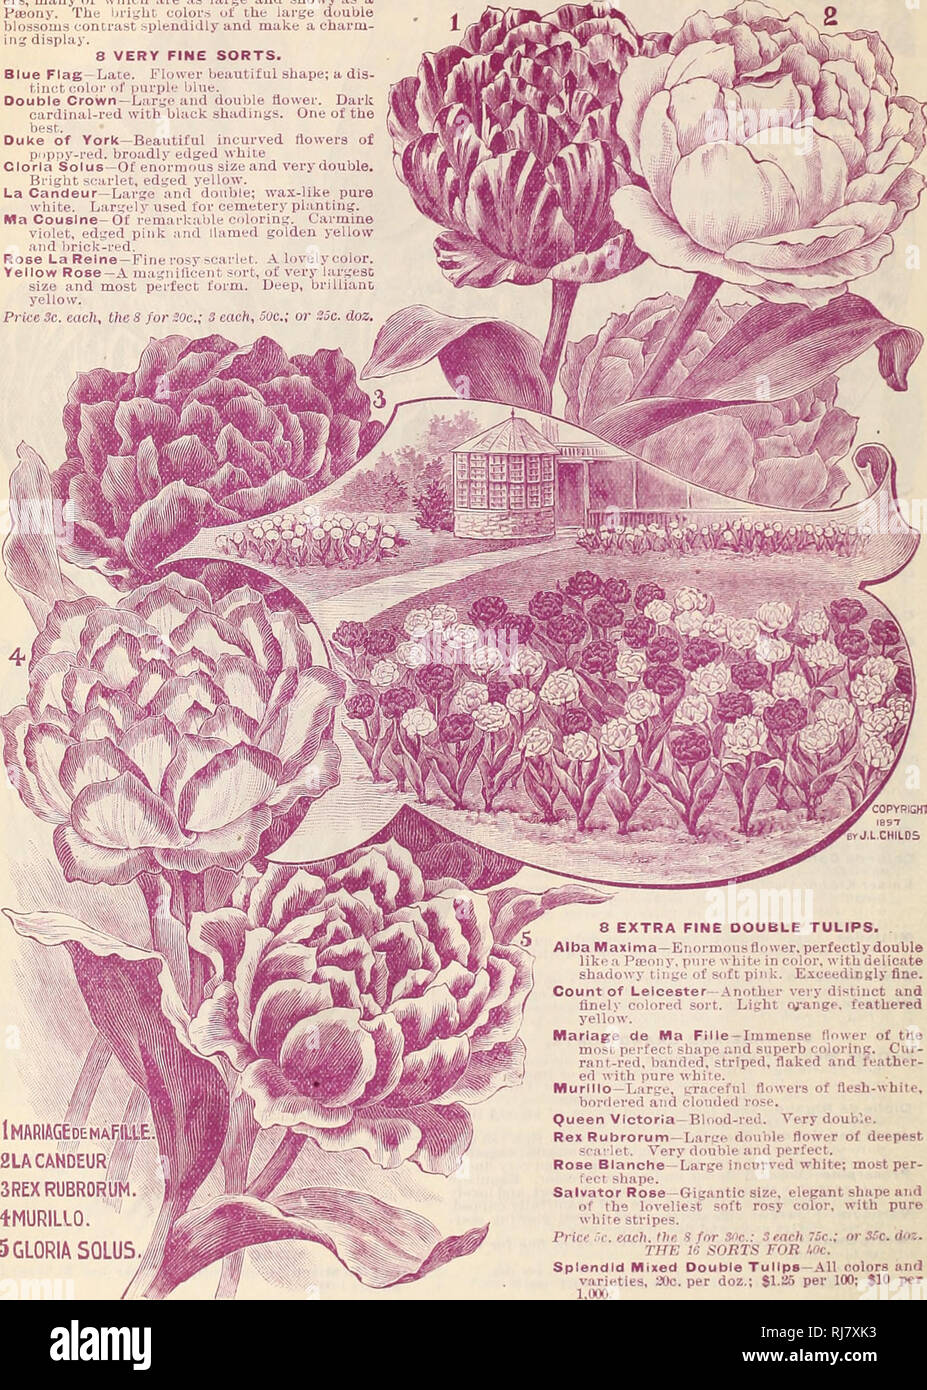 . Childs' cadono catalogo delle lampadine che bloom, 1899. Vivai (orticoltura) cataloghi; lampadine (piante) cataloghi; John Lewis Childs (Azienda); Vivai (orticoltura); lampadine (piante). 6 JOHN LEWIS CHILDS, FLORAL park, N. Y. GKR^ZLSTID tulipani doppia. Tulipani doppia produrre doppia molto grande dow- ers, molti dei quali sono grandi e vistose come Pteony. I colori luminosi dei grandi fiori di doppio contrasto splendidamente e rendere un fascino- ing display. 8 molto belle Ordina. Bandiera Blu - Fine. Flower bella forma; un dis- tinct di colore blu porpora. Doppia corona e âLarge fiore doppio. Il cardinale scuro-rosso con Foto Stock